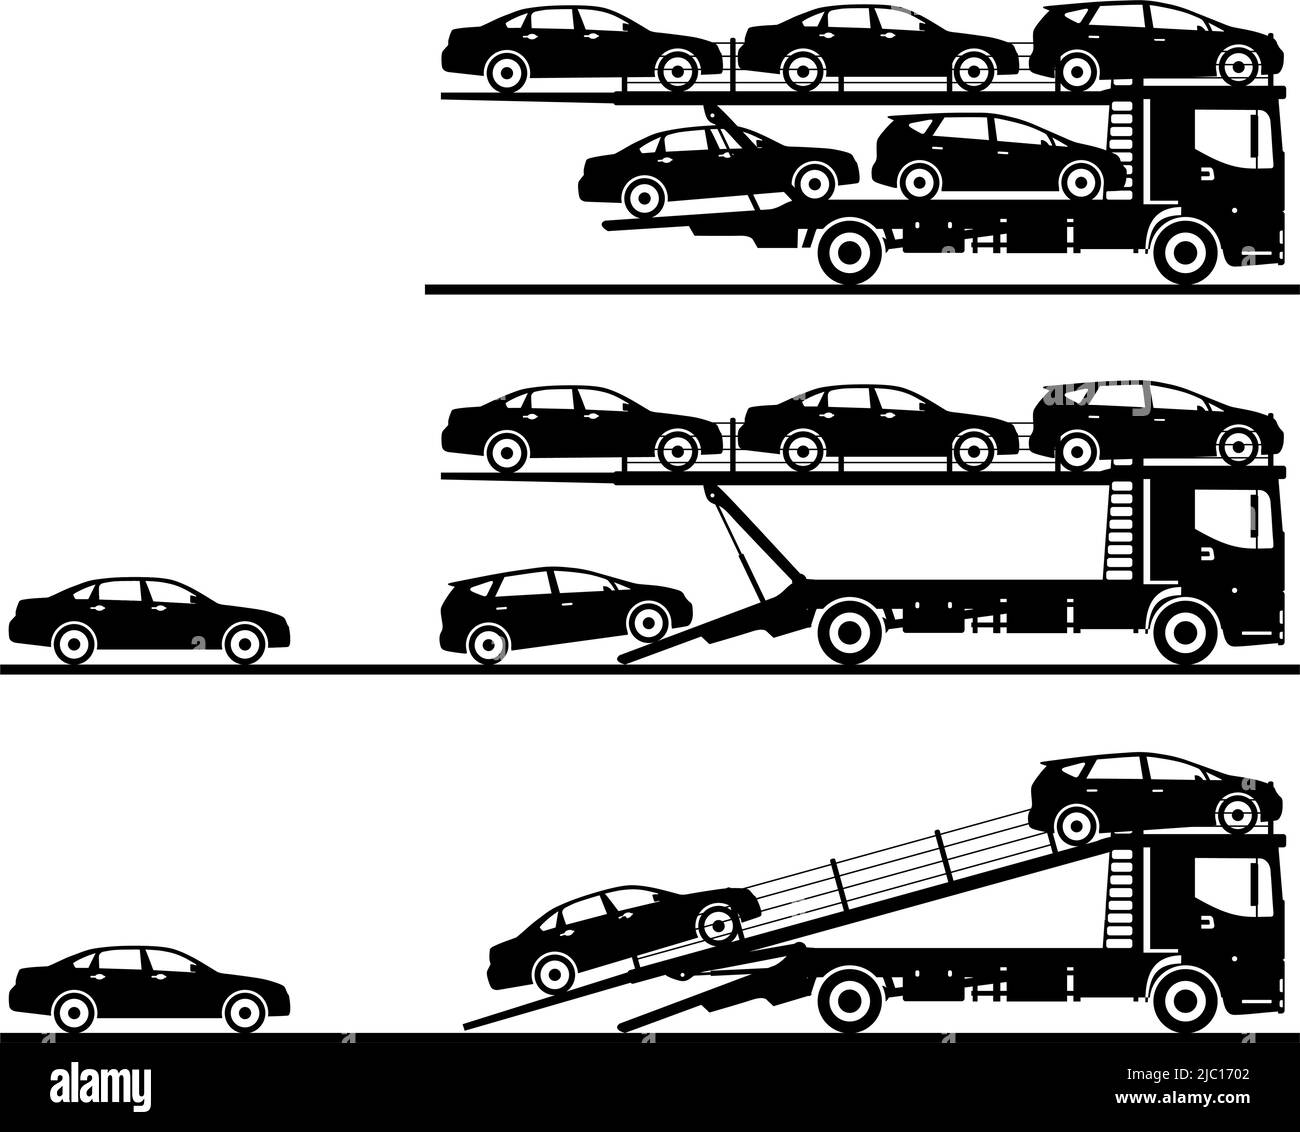 Silhouette Illustration von Auto-Transporter auf weißem Hintergrund in flachem Stil in verschiedenen Positionen. Vektorgrafik. Stock Vektor